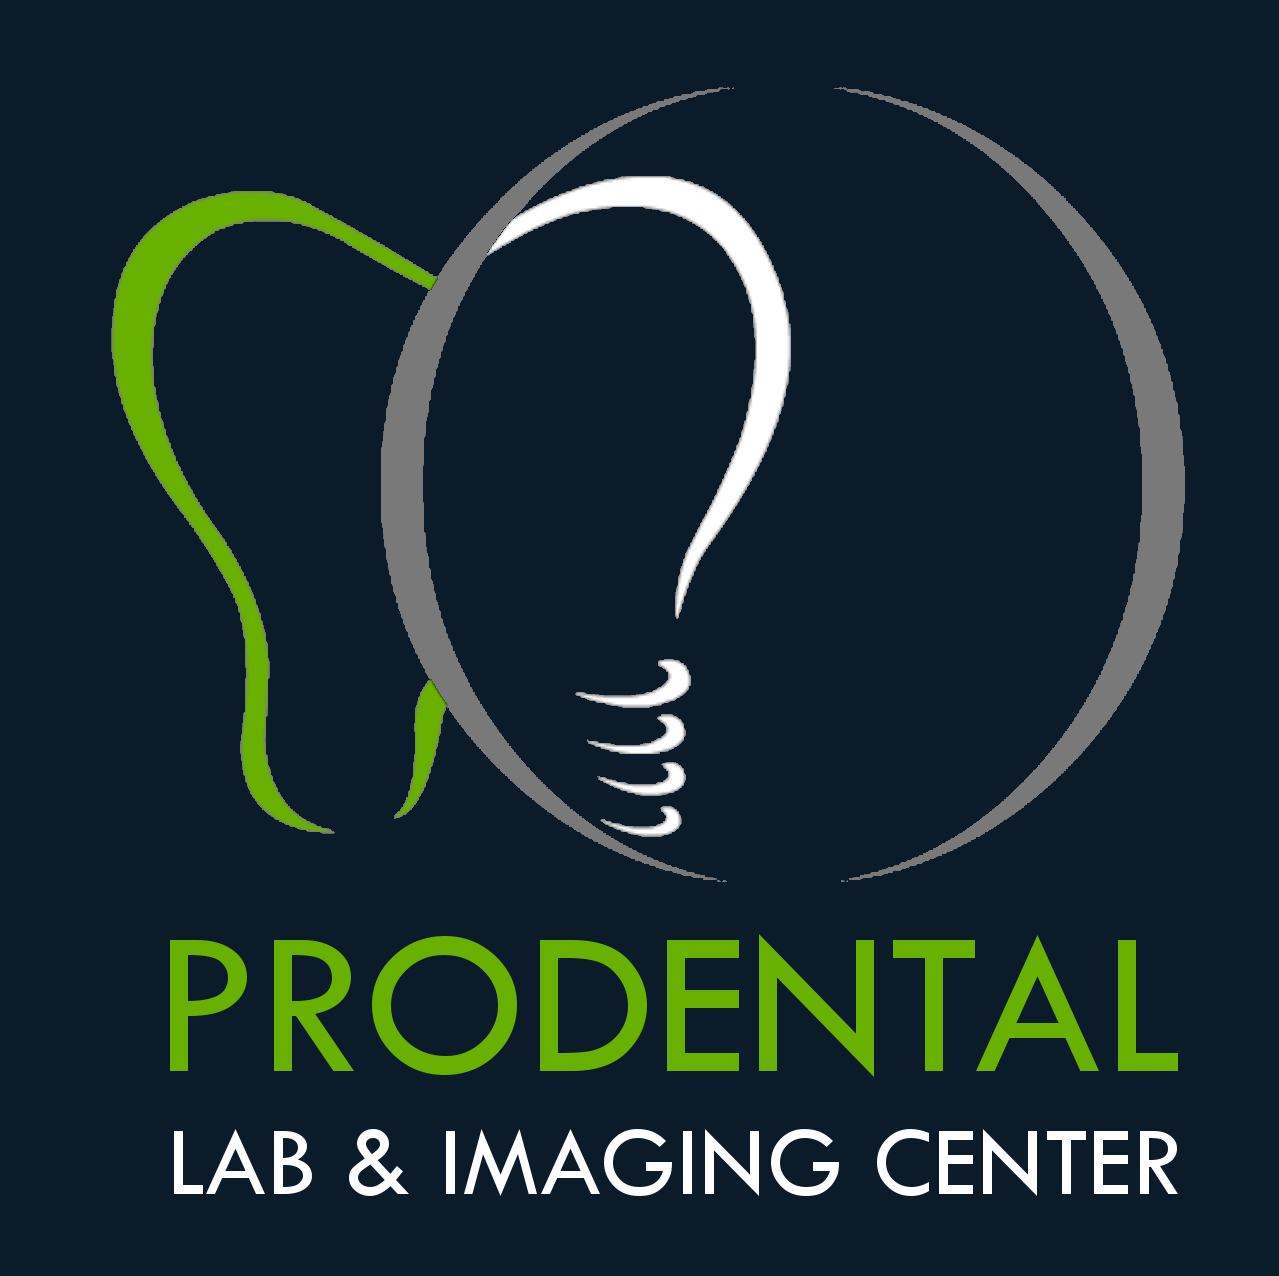 Pro Dental Lab & Imaging Center